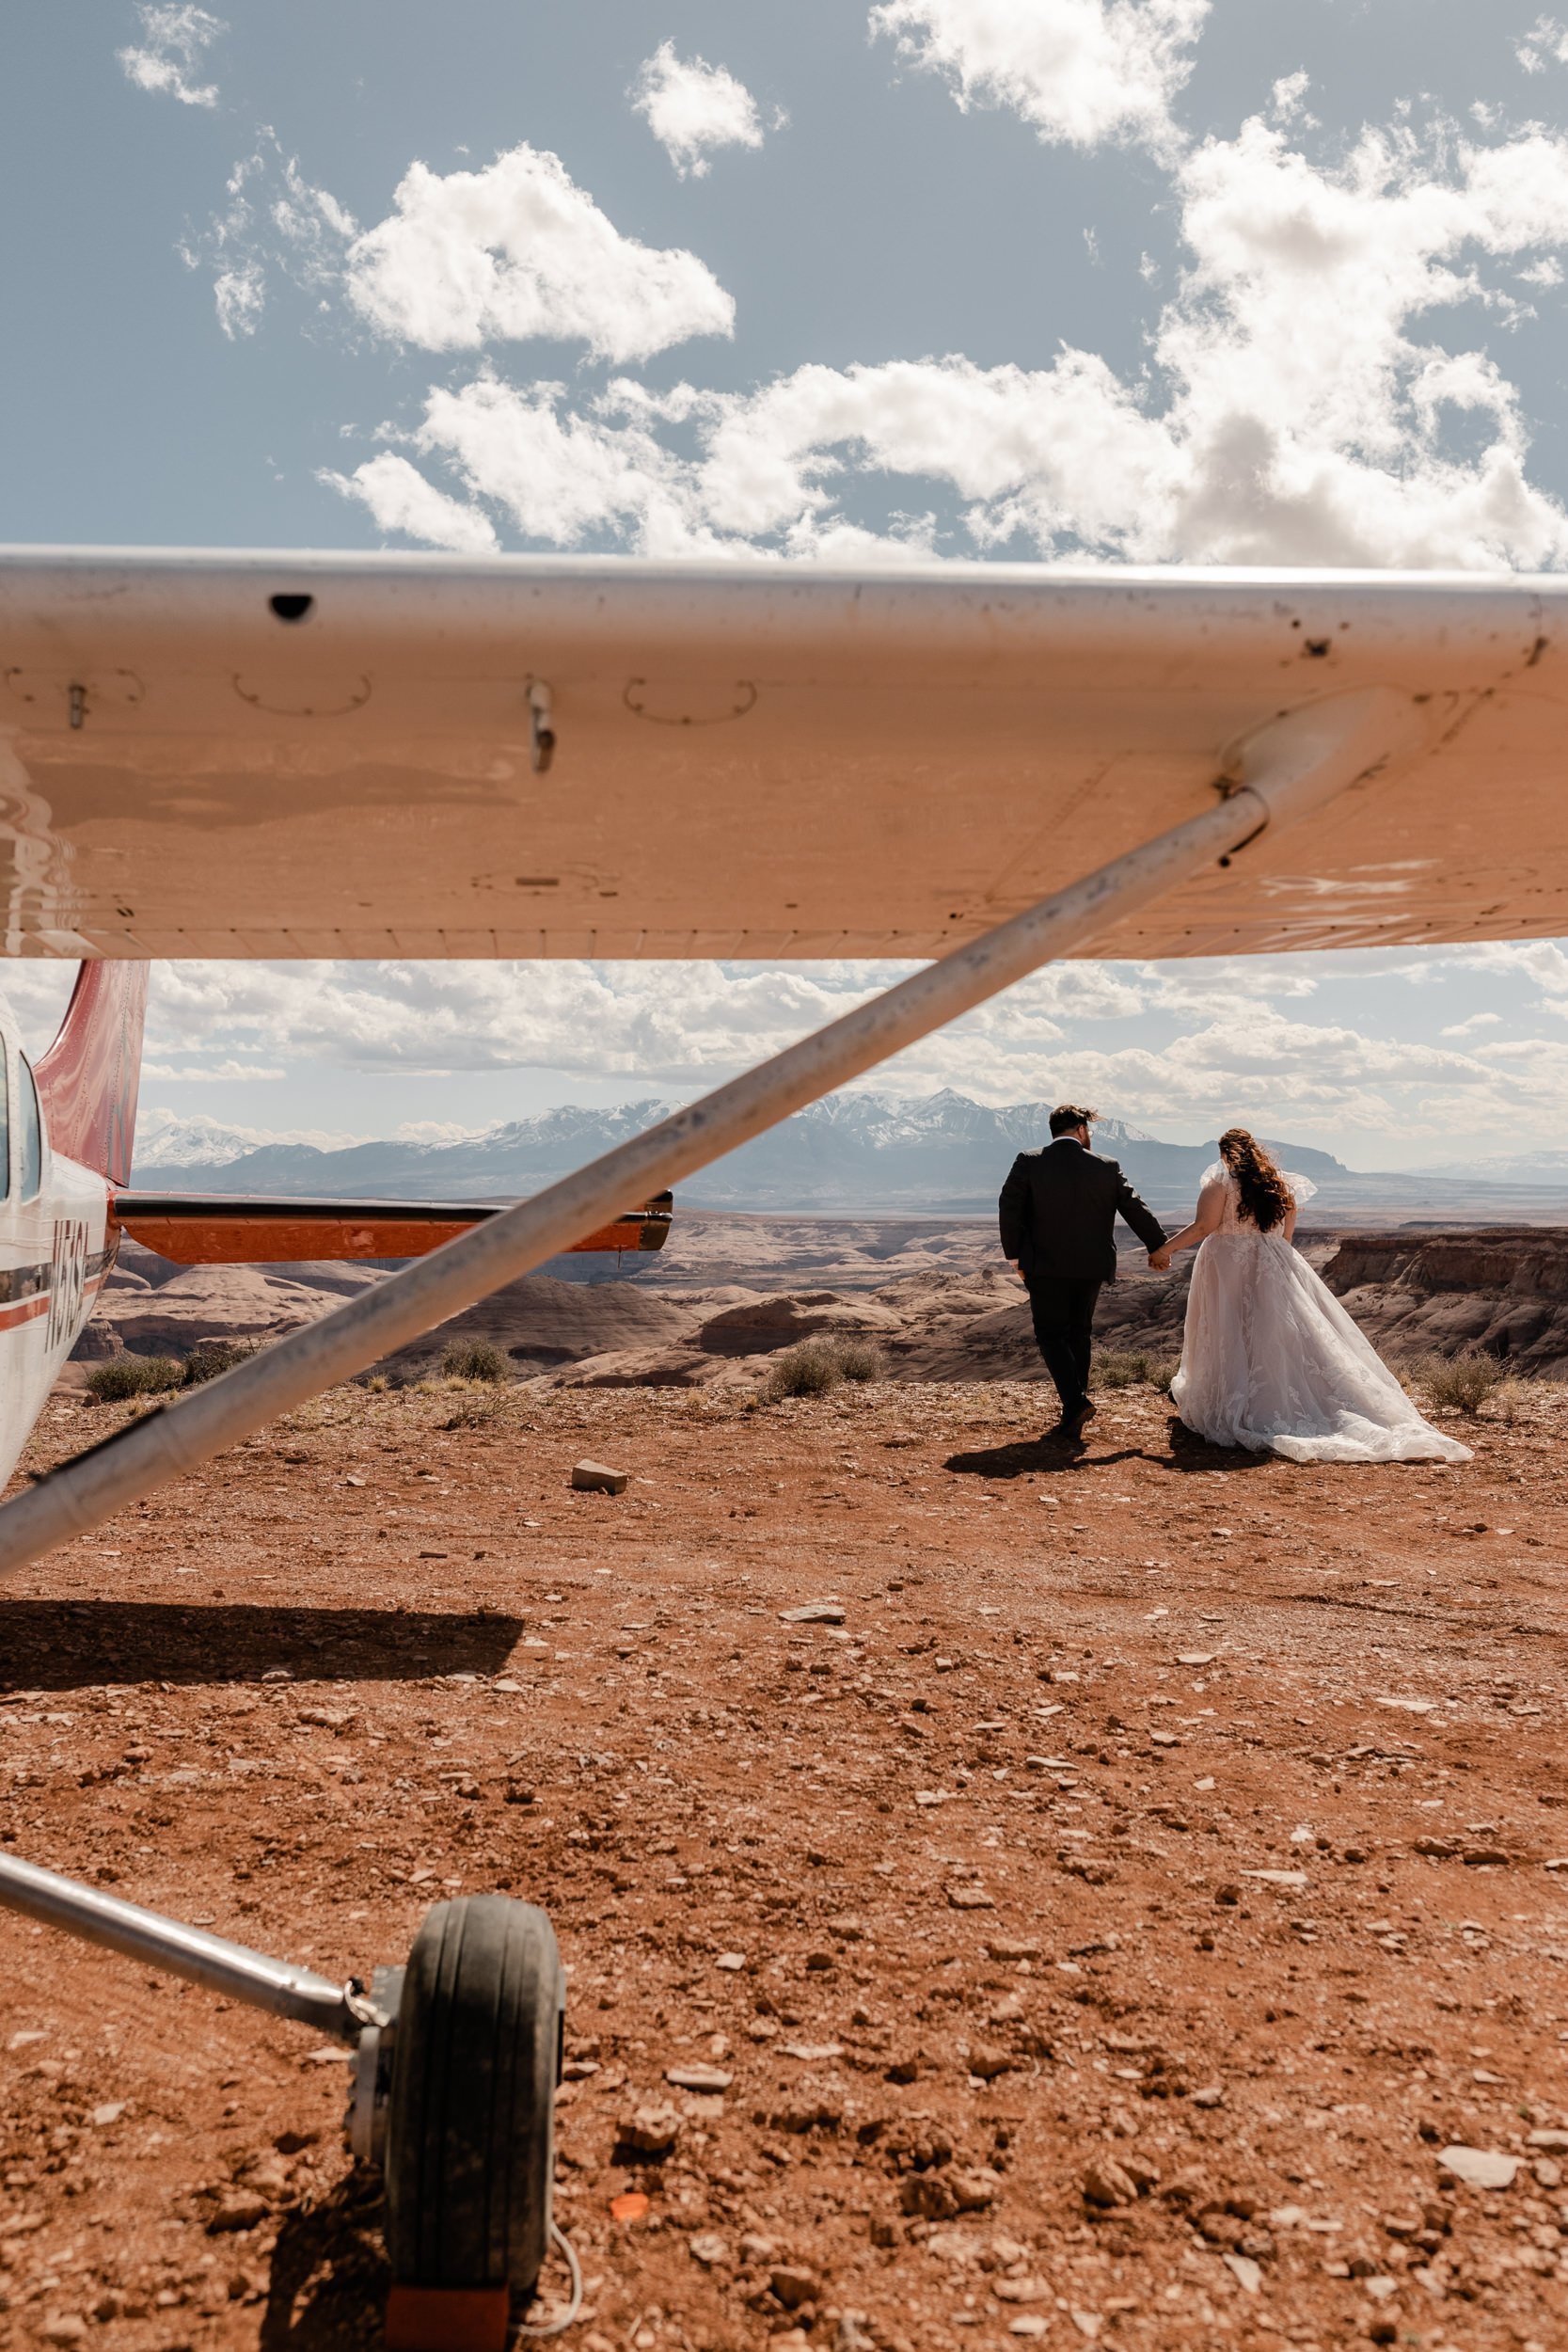 Airplane Backcountry Wedding in Utah | The Hearnes Adventure Weddings